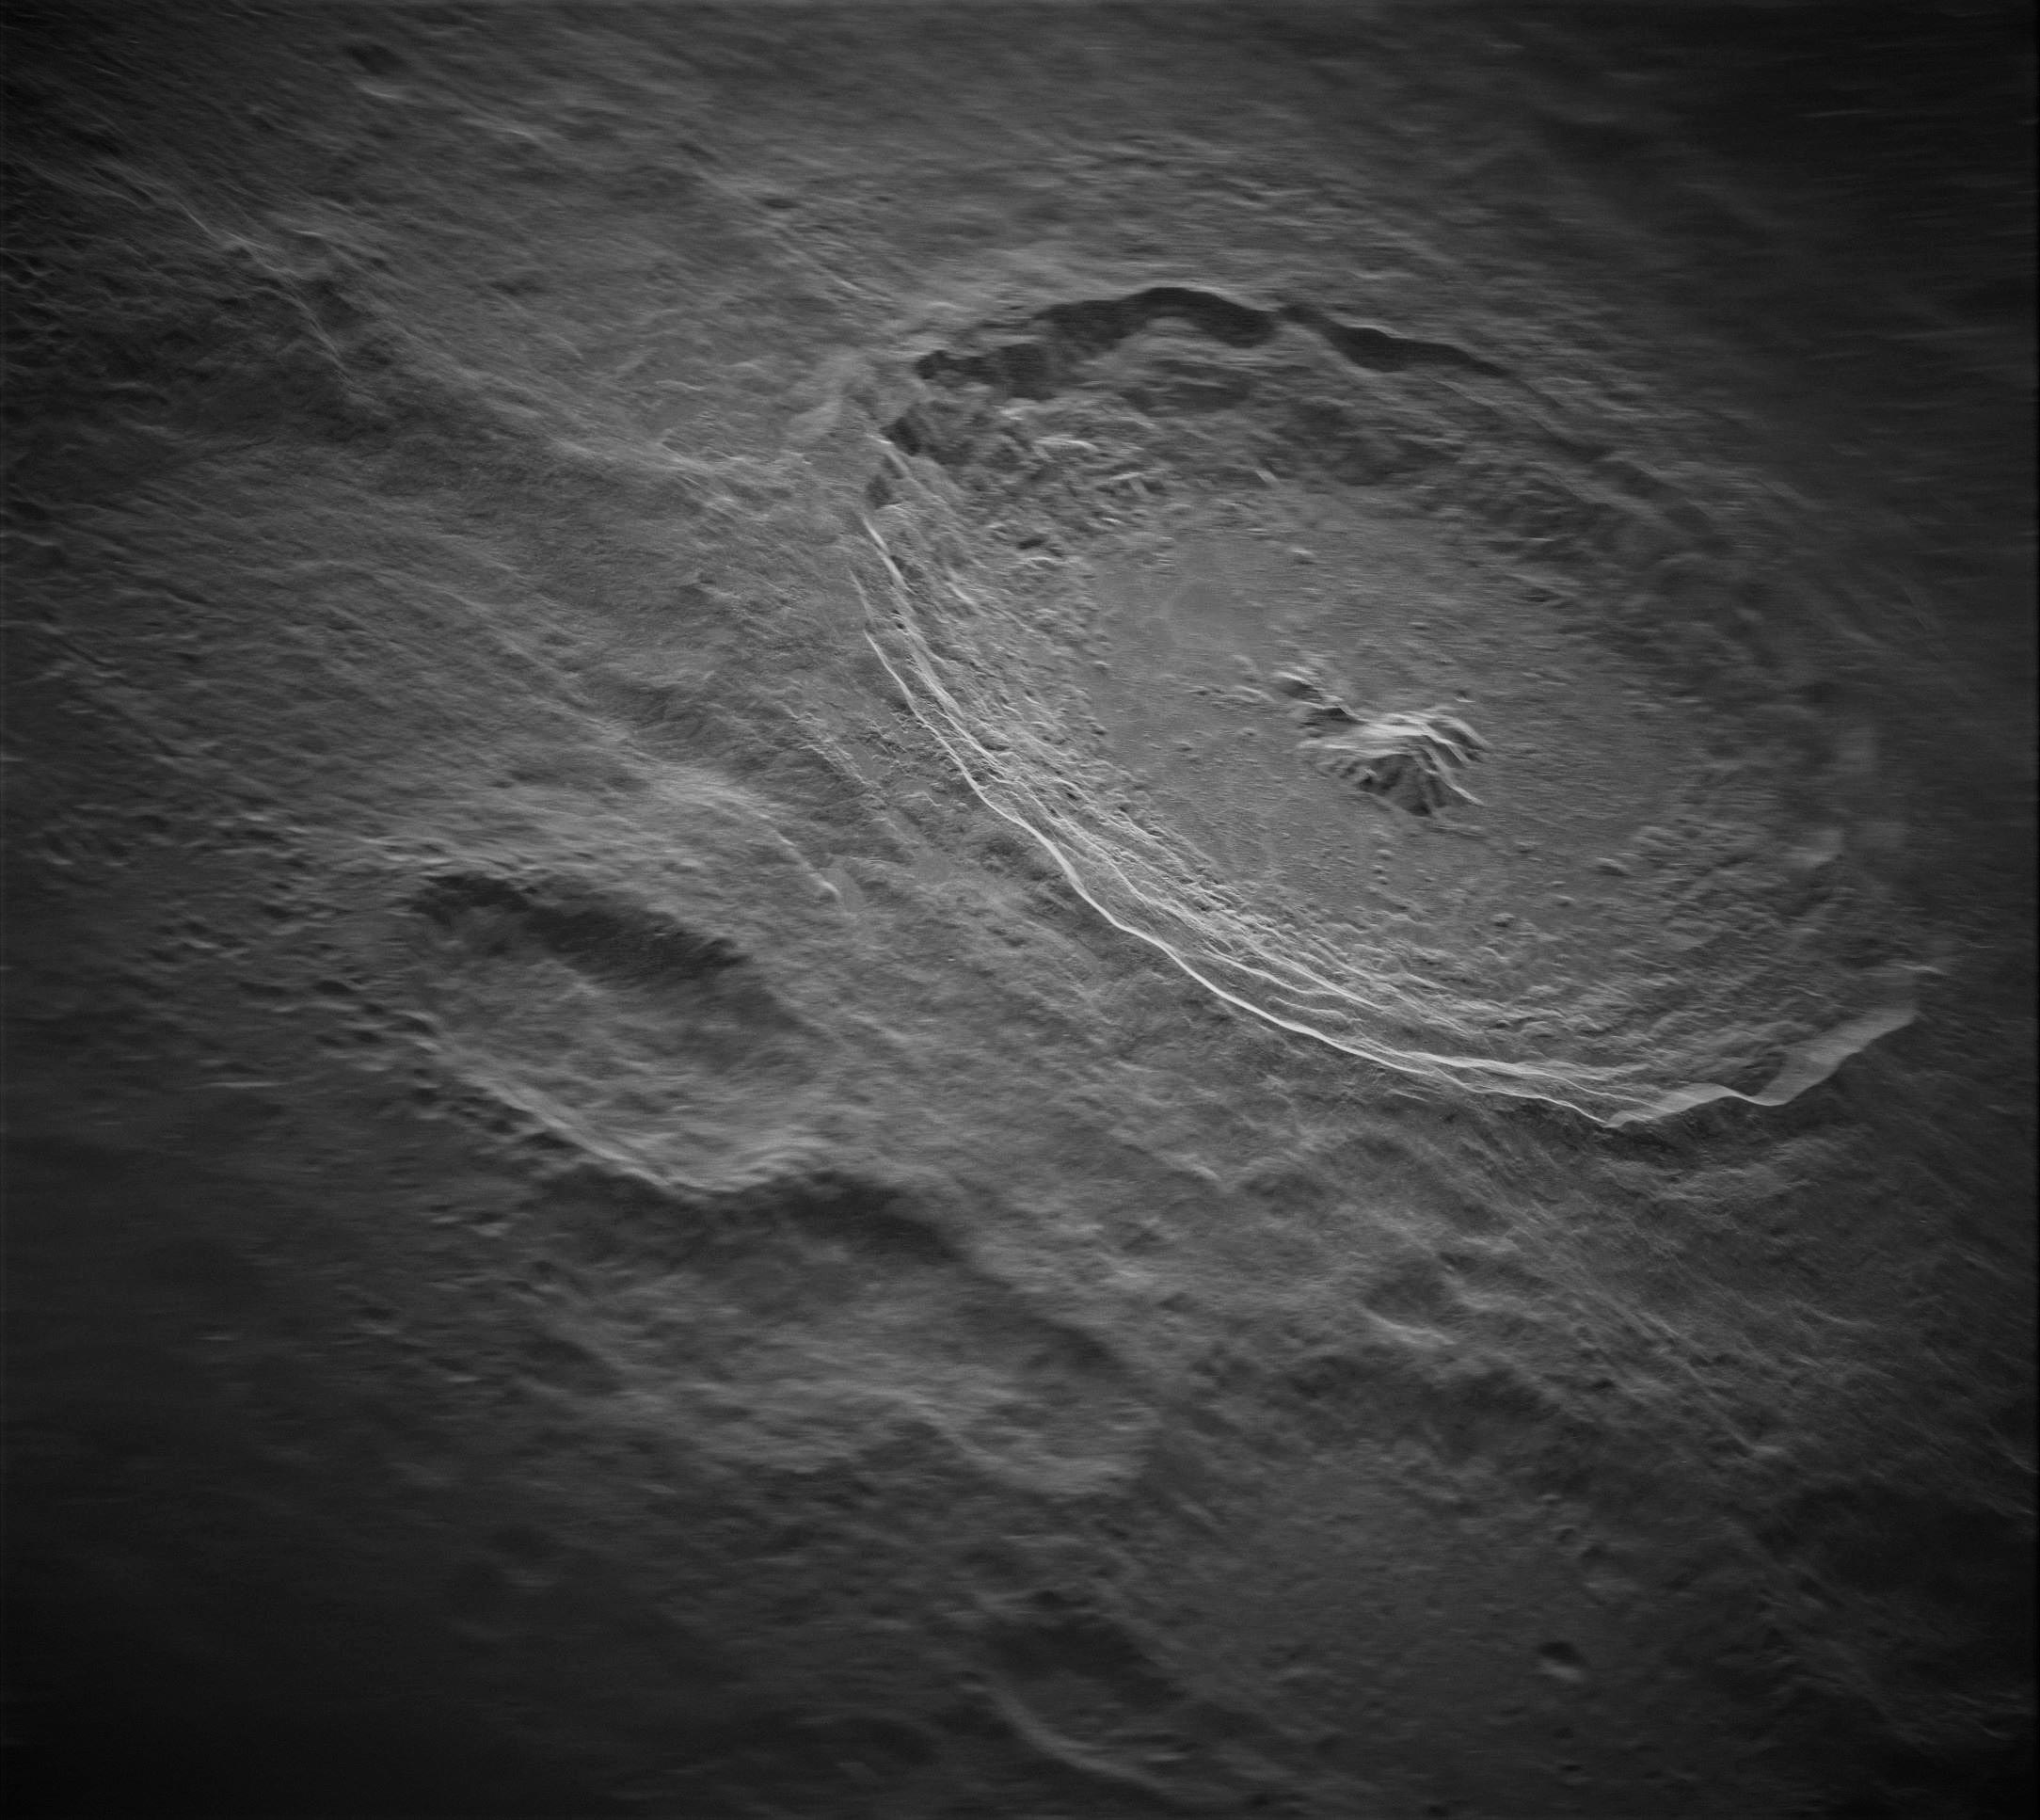 Астрономи змогли зробити саму чітку фотографію поверхні Місяця